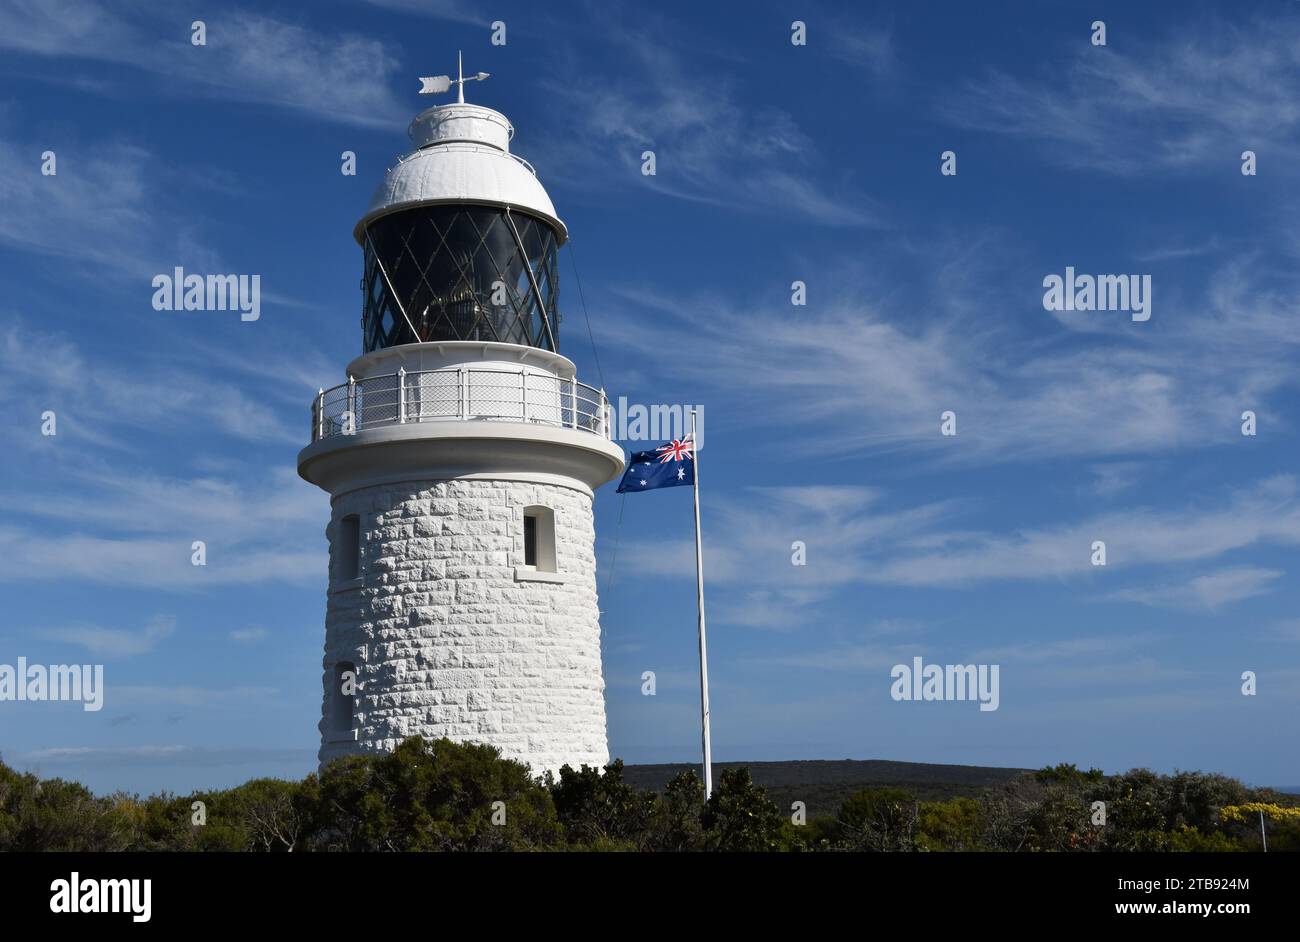 Le phare historique de Cape Naturaliste construit en 1904, parc national de Leeuwin-Naturaliste, près de Dunsborough, Australie occidentale, Australie Banque D'Images